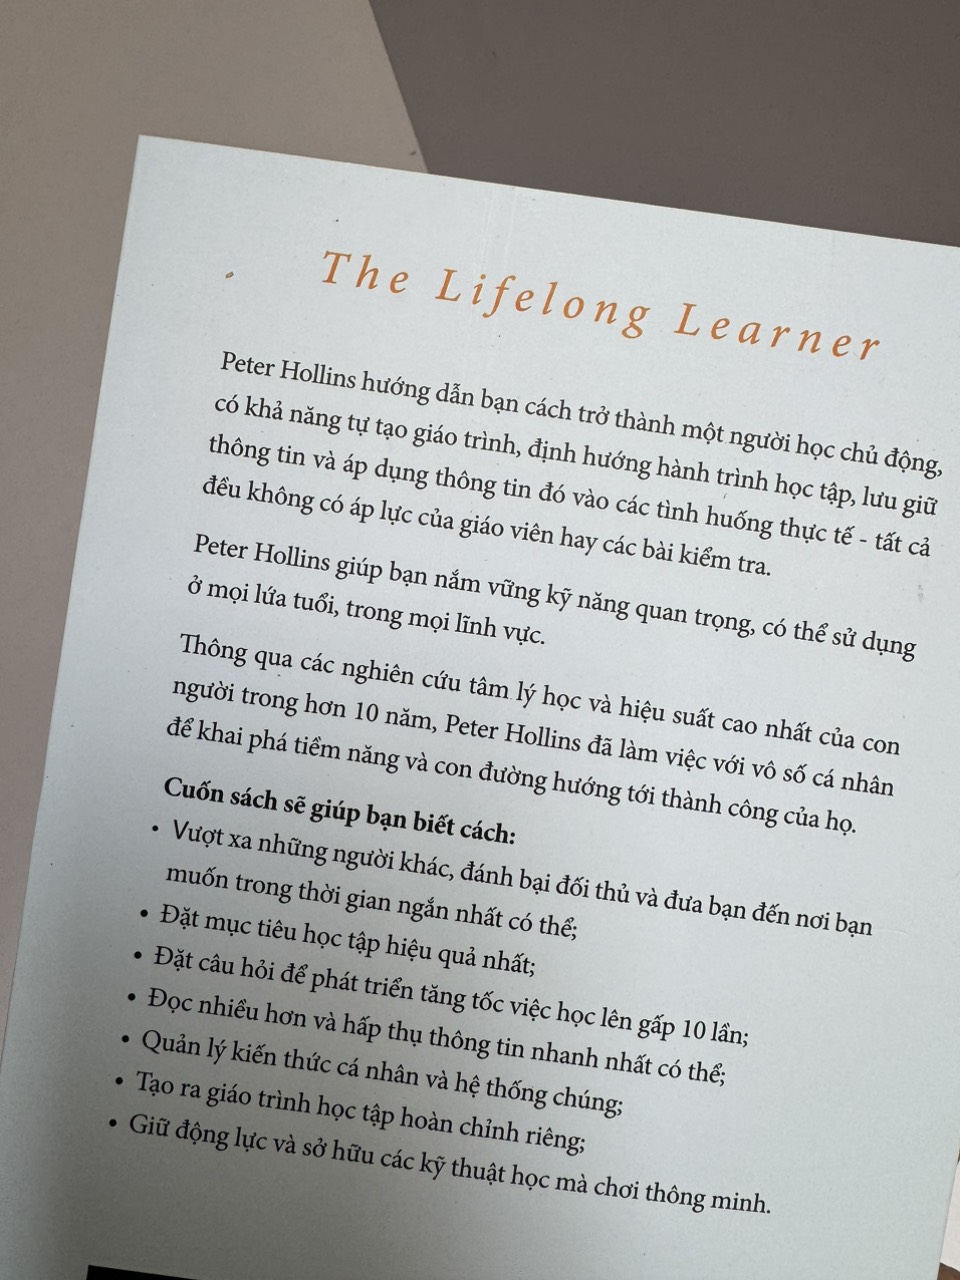 Hình ảnh HỌC TẬP SUỐT ĐỜI – THE LIFELONG LEARNER – Peter Hollins - Tống Liên Anh & Lê Anh Thư dịch -Timesbook- NXB Dân Trí